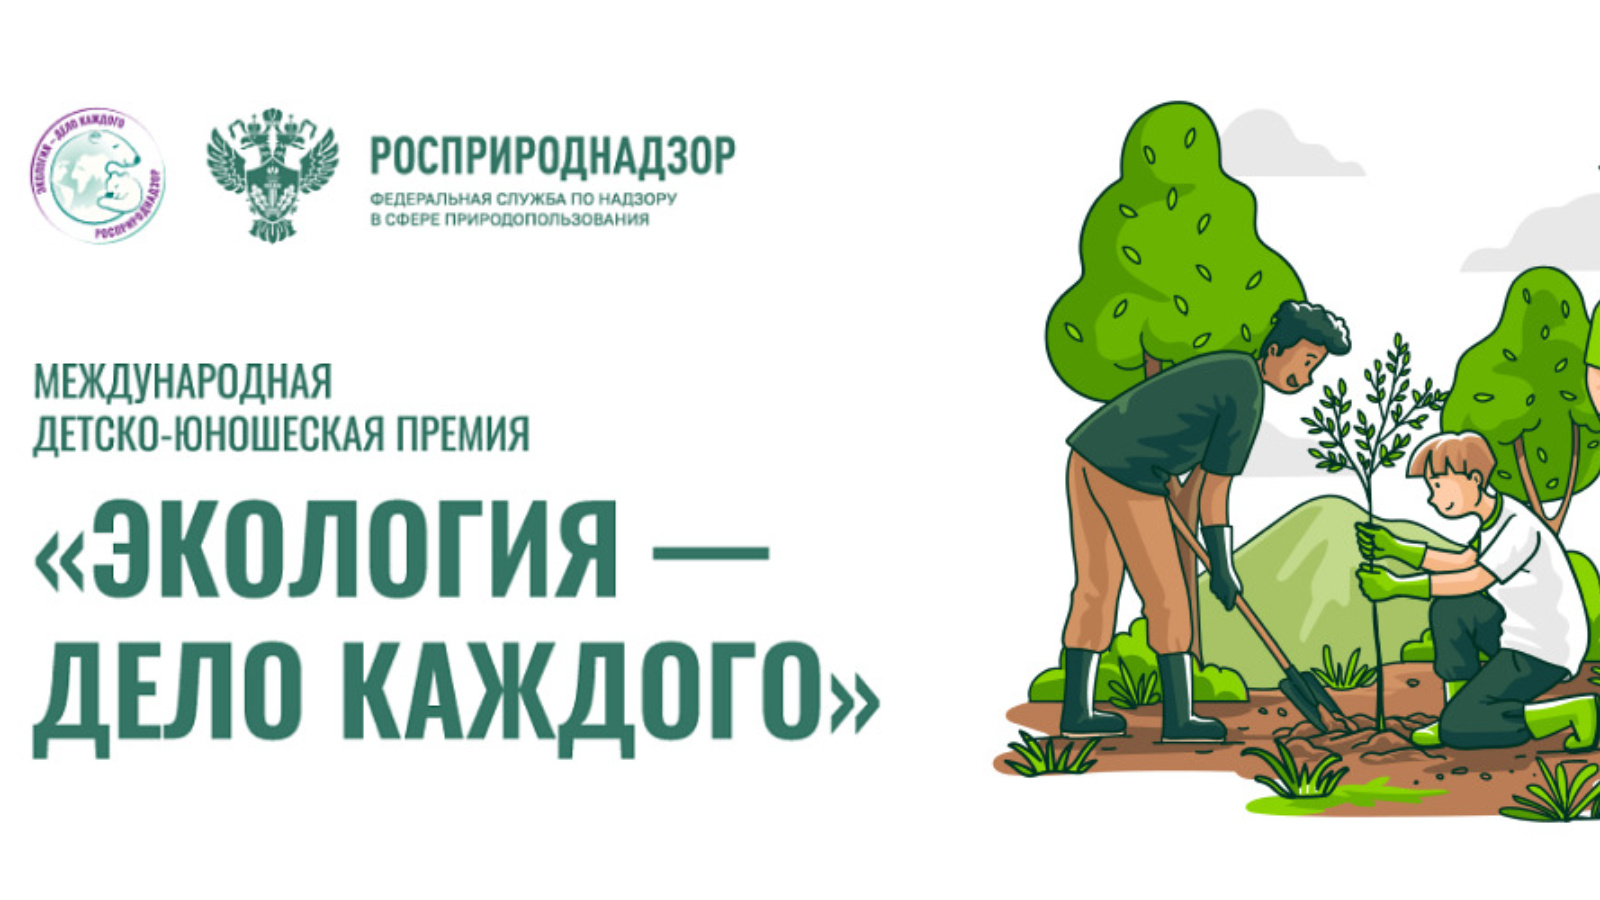 Сокольчан приглашают принять участие в главном природоохранном проекте «Экология – дело каждого».